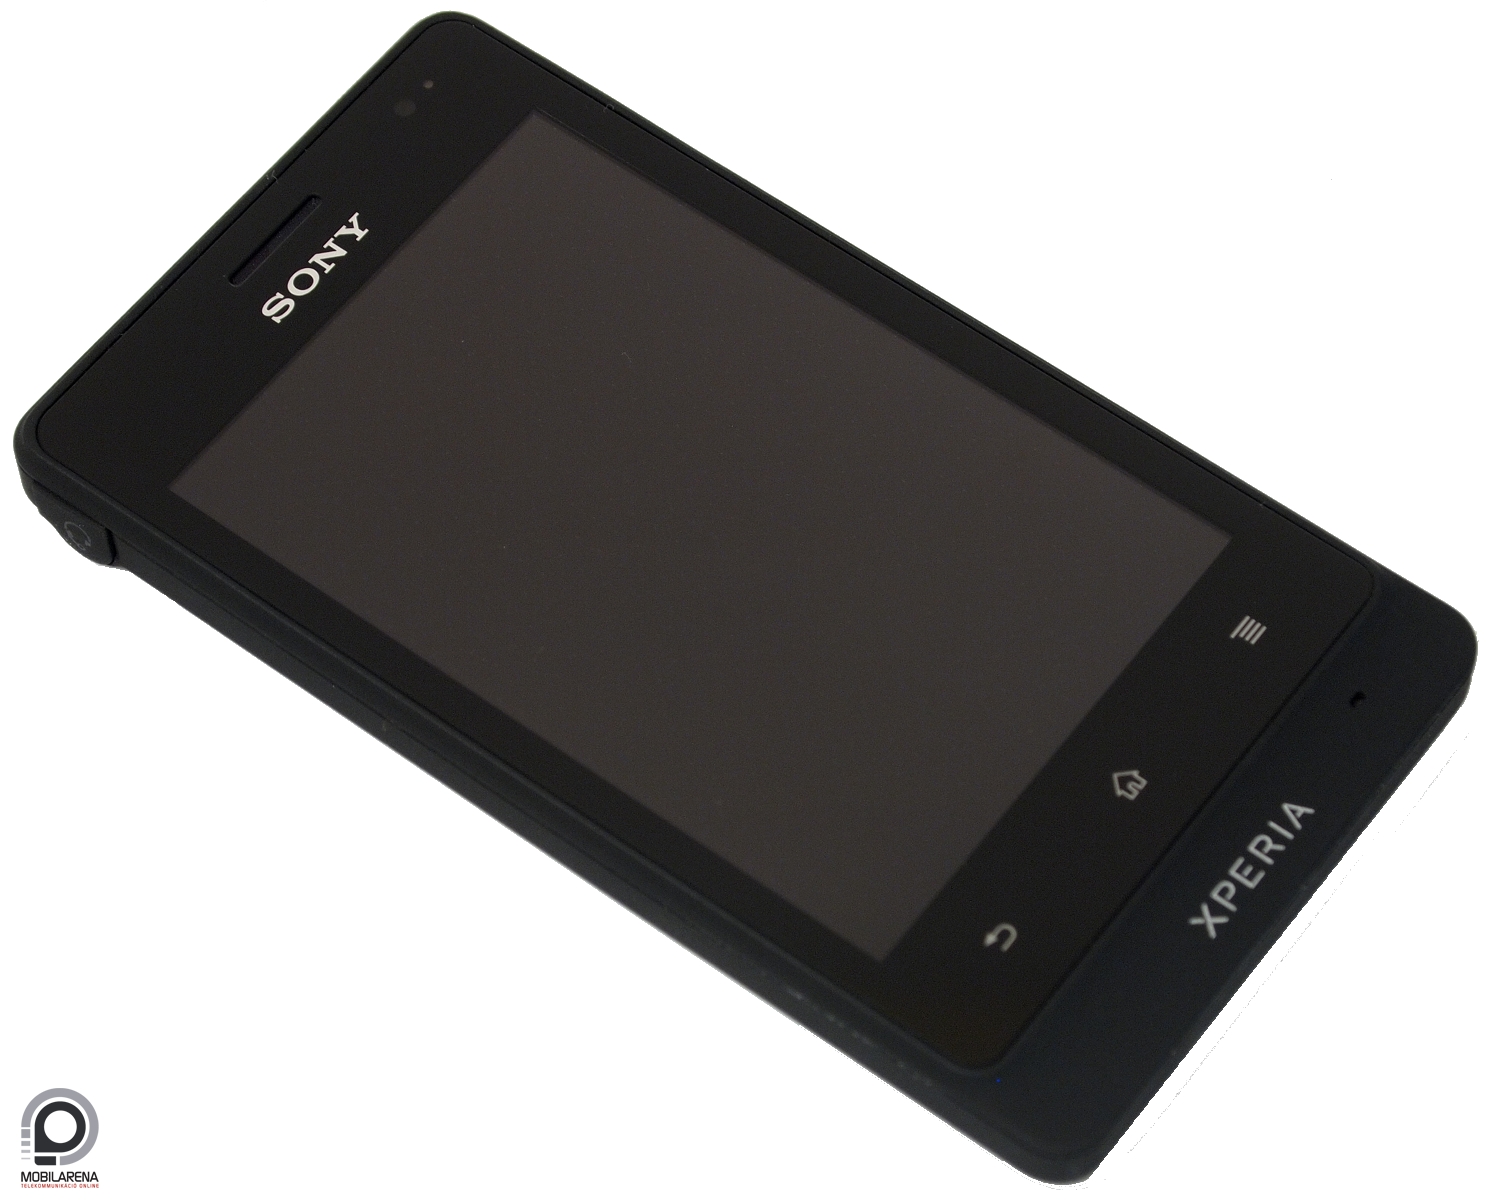 Sony Xperia Go - futott még - Mobilarena Okostelefon teszt - Nyomtatóbarát  verzió